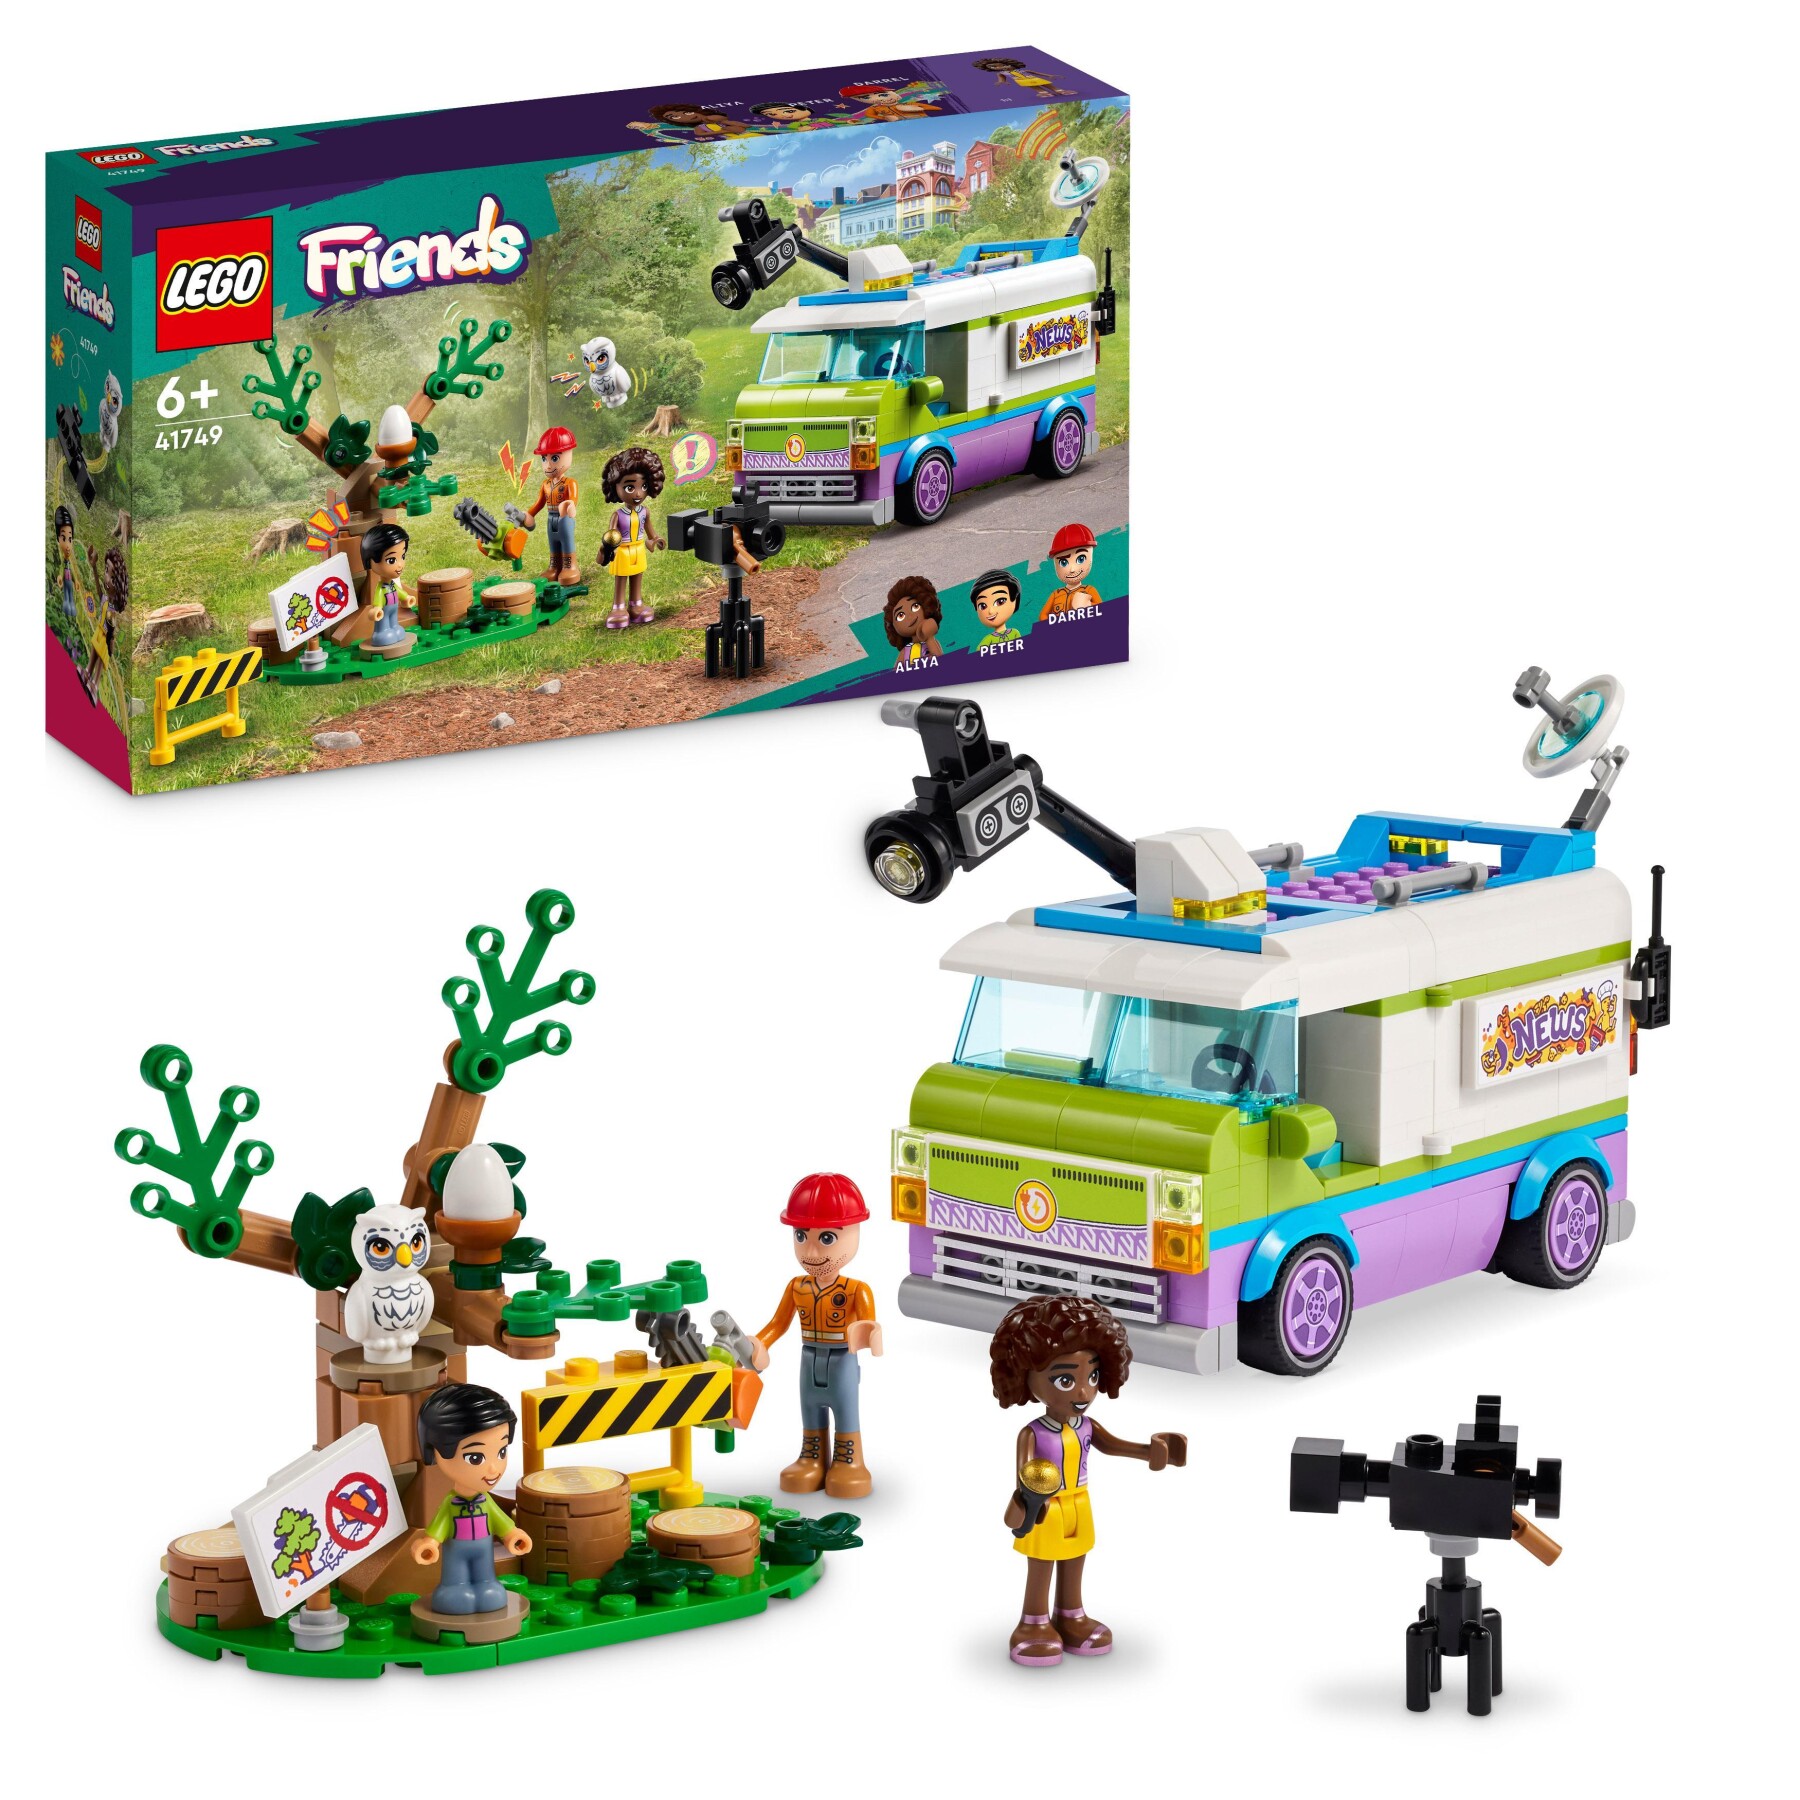 Lego friends 41749 furgone della troupe televisiva, camion giocattolo per le notizie e salvataggio animali, regalo per bambini - LEGO FRIENDS